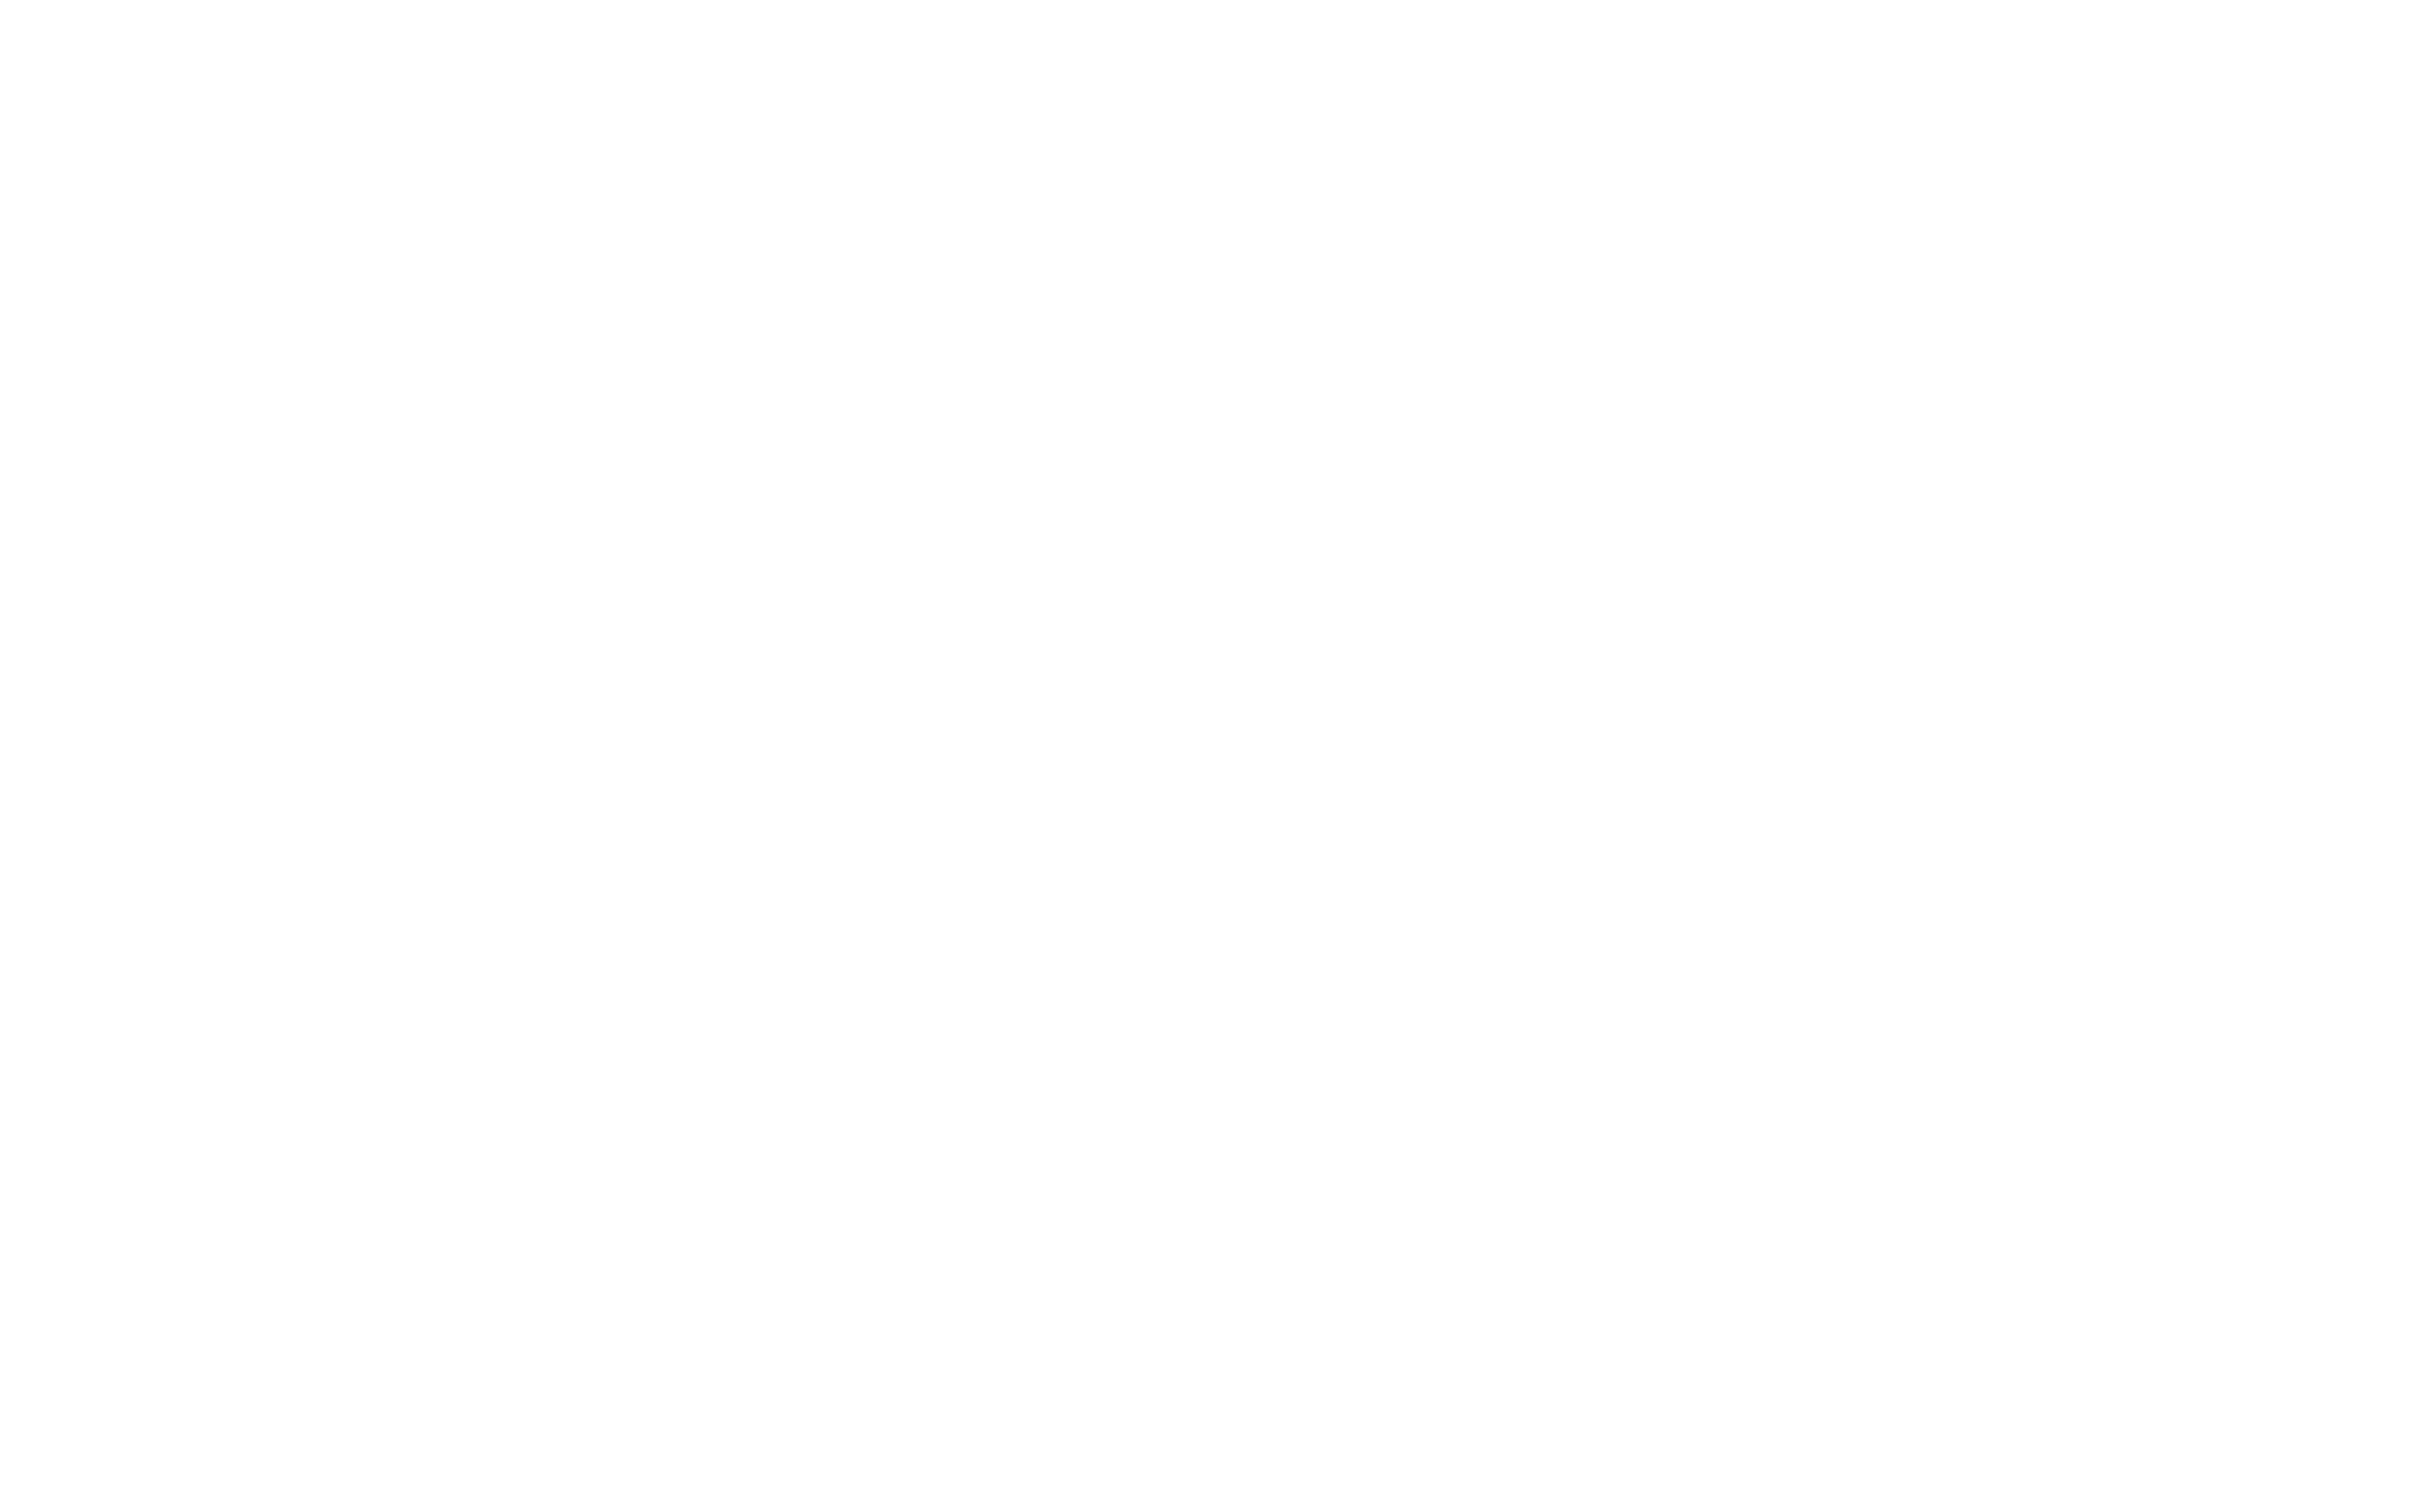 videoLogo.png 